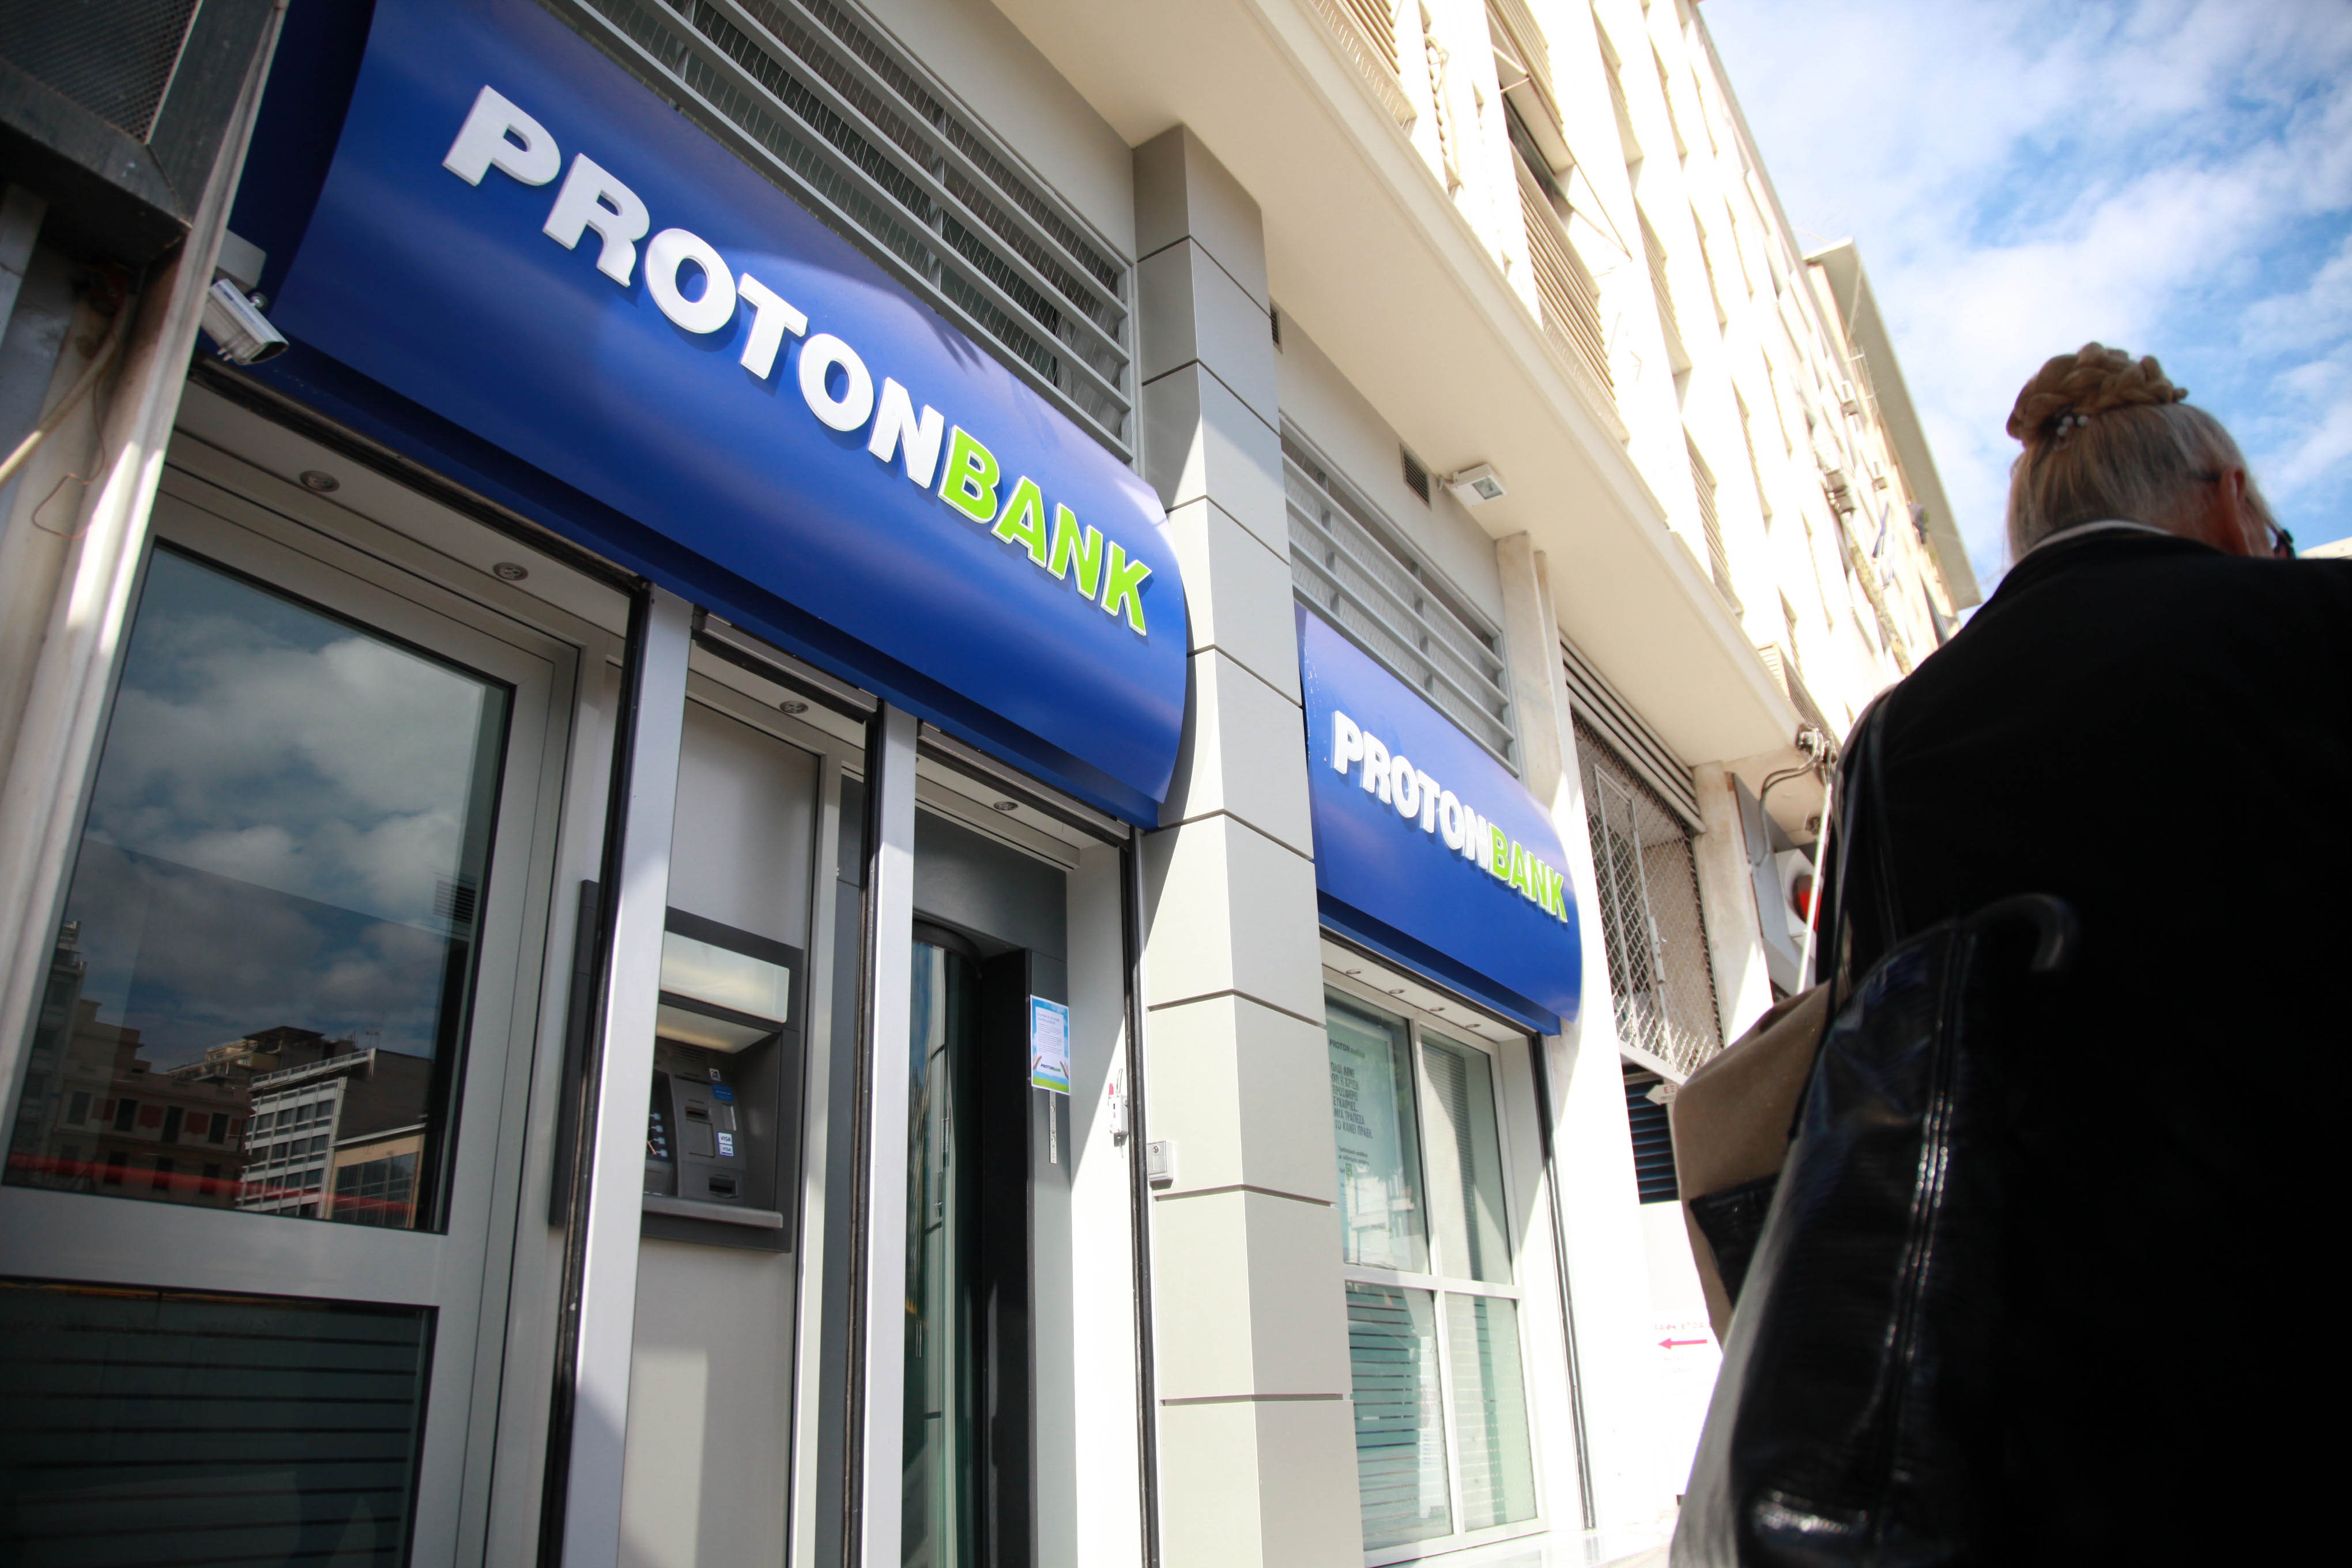 Πώς στήθηκε η κομπίνα με την Proton Bank